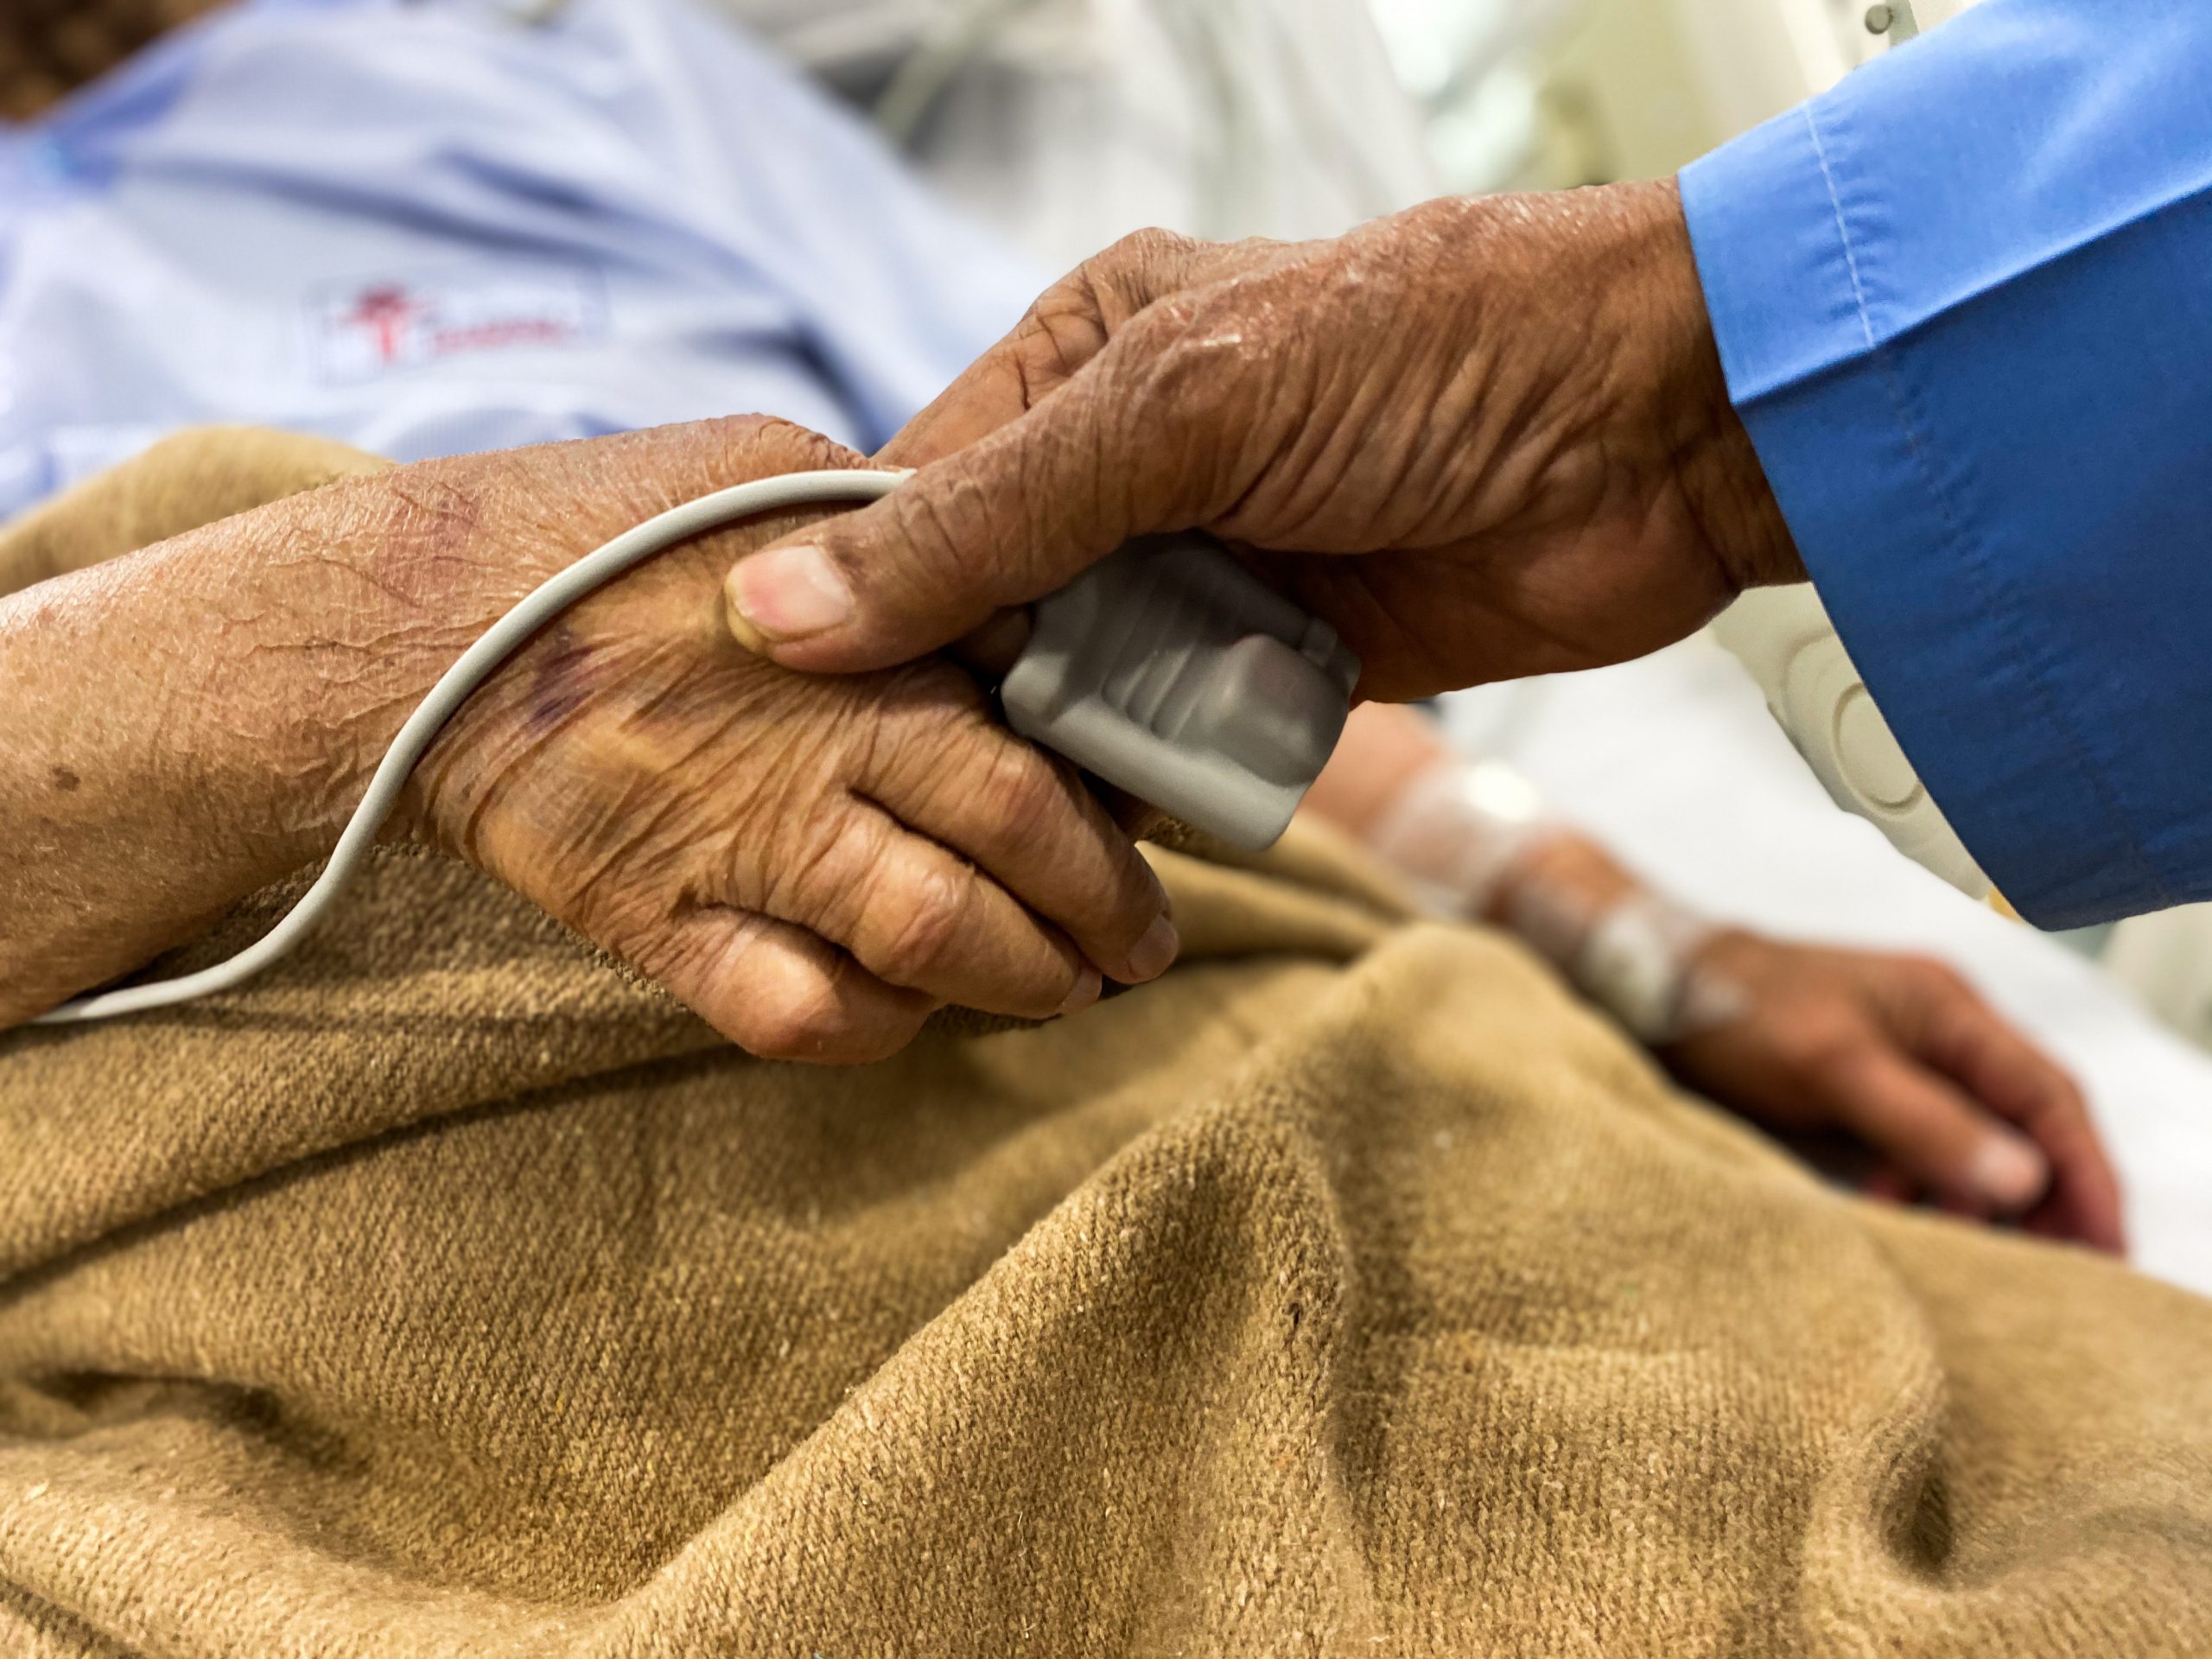 Le 8 octobre est la Journée mondiale des soins palliatifs. A cette occasion, Liages (anciennement Espace Seniors), association du réseau Solidaris, tient à rappeler que la loi relative aux soins palliatifs fut modifiée en 2016 en vue d'élargir la définition de ces soins.